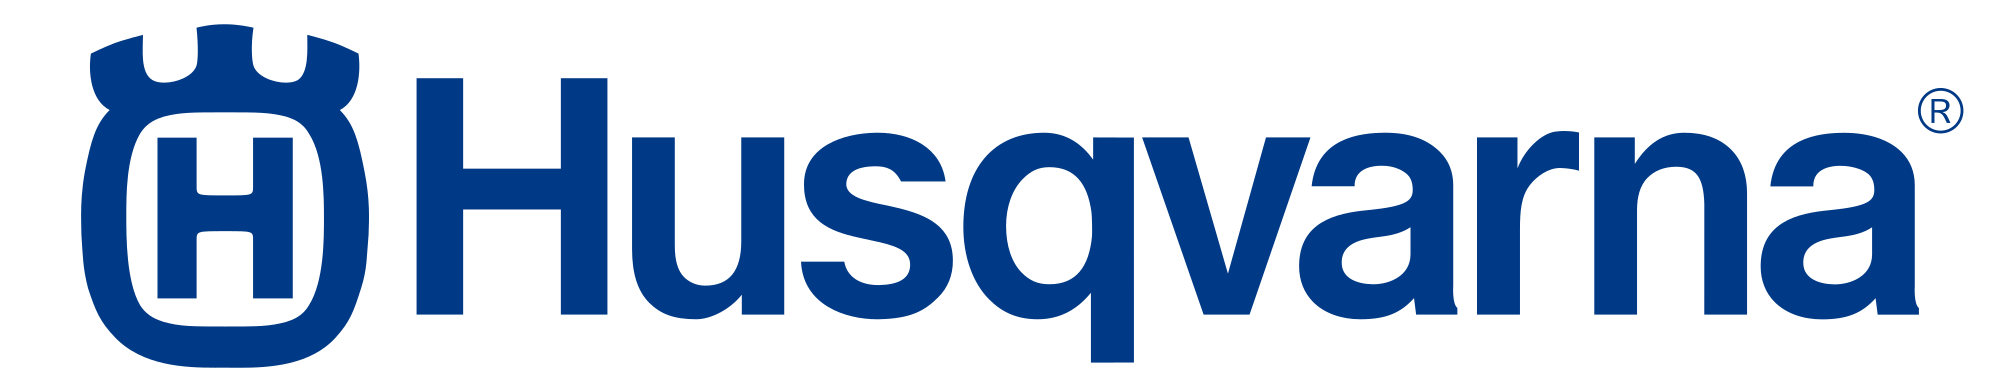 Bildergebnis für husqvarna logo